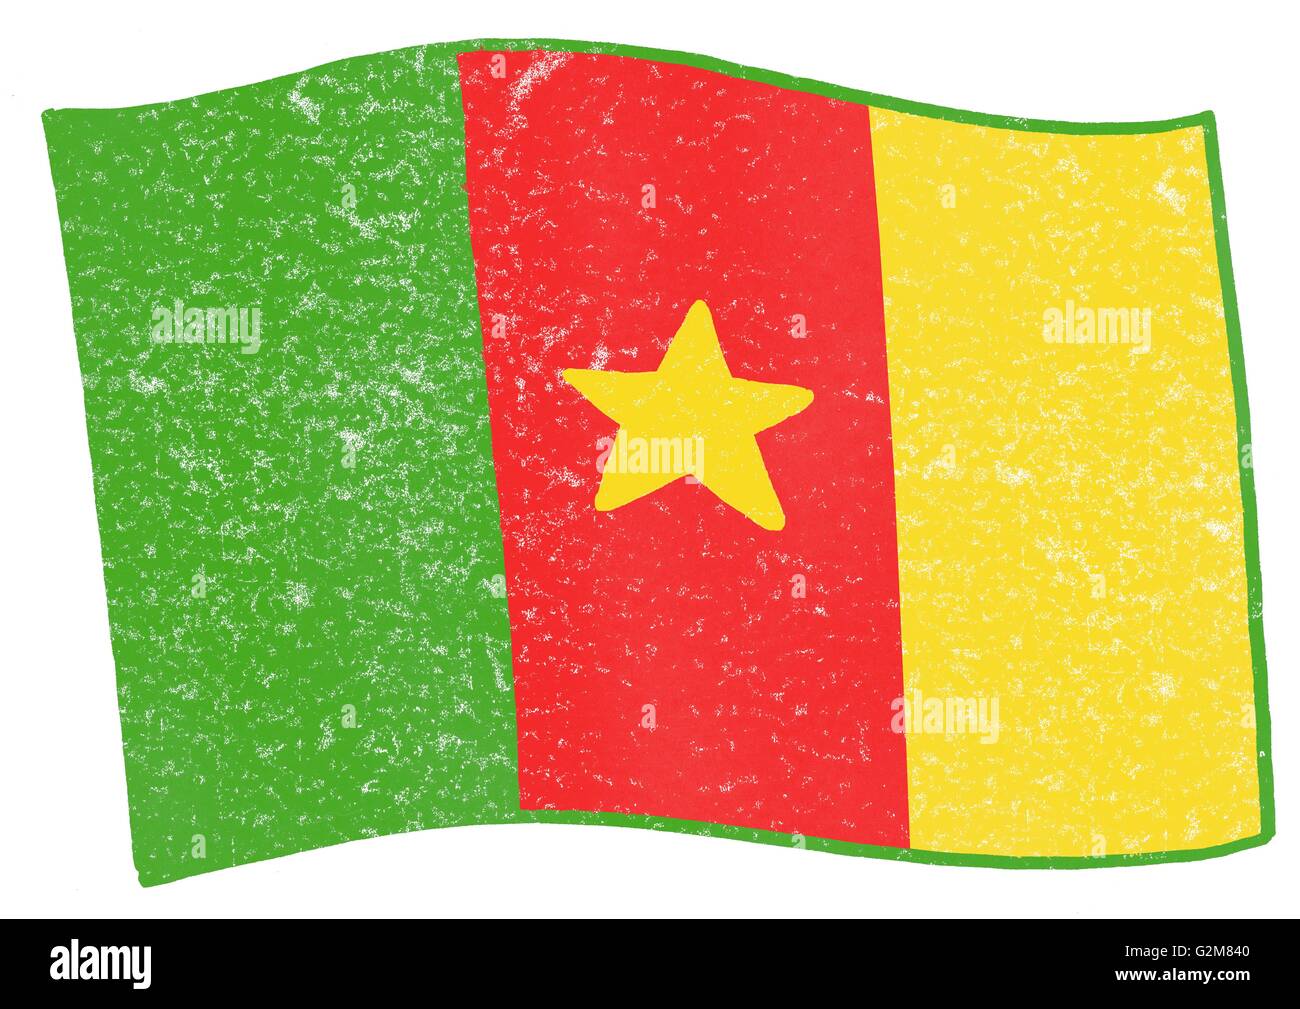 Blick auf grüne, rote und gelbe Flagge mit gelben Stern auf rot  Stockfotografie - Alamy